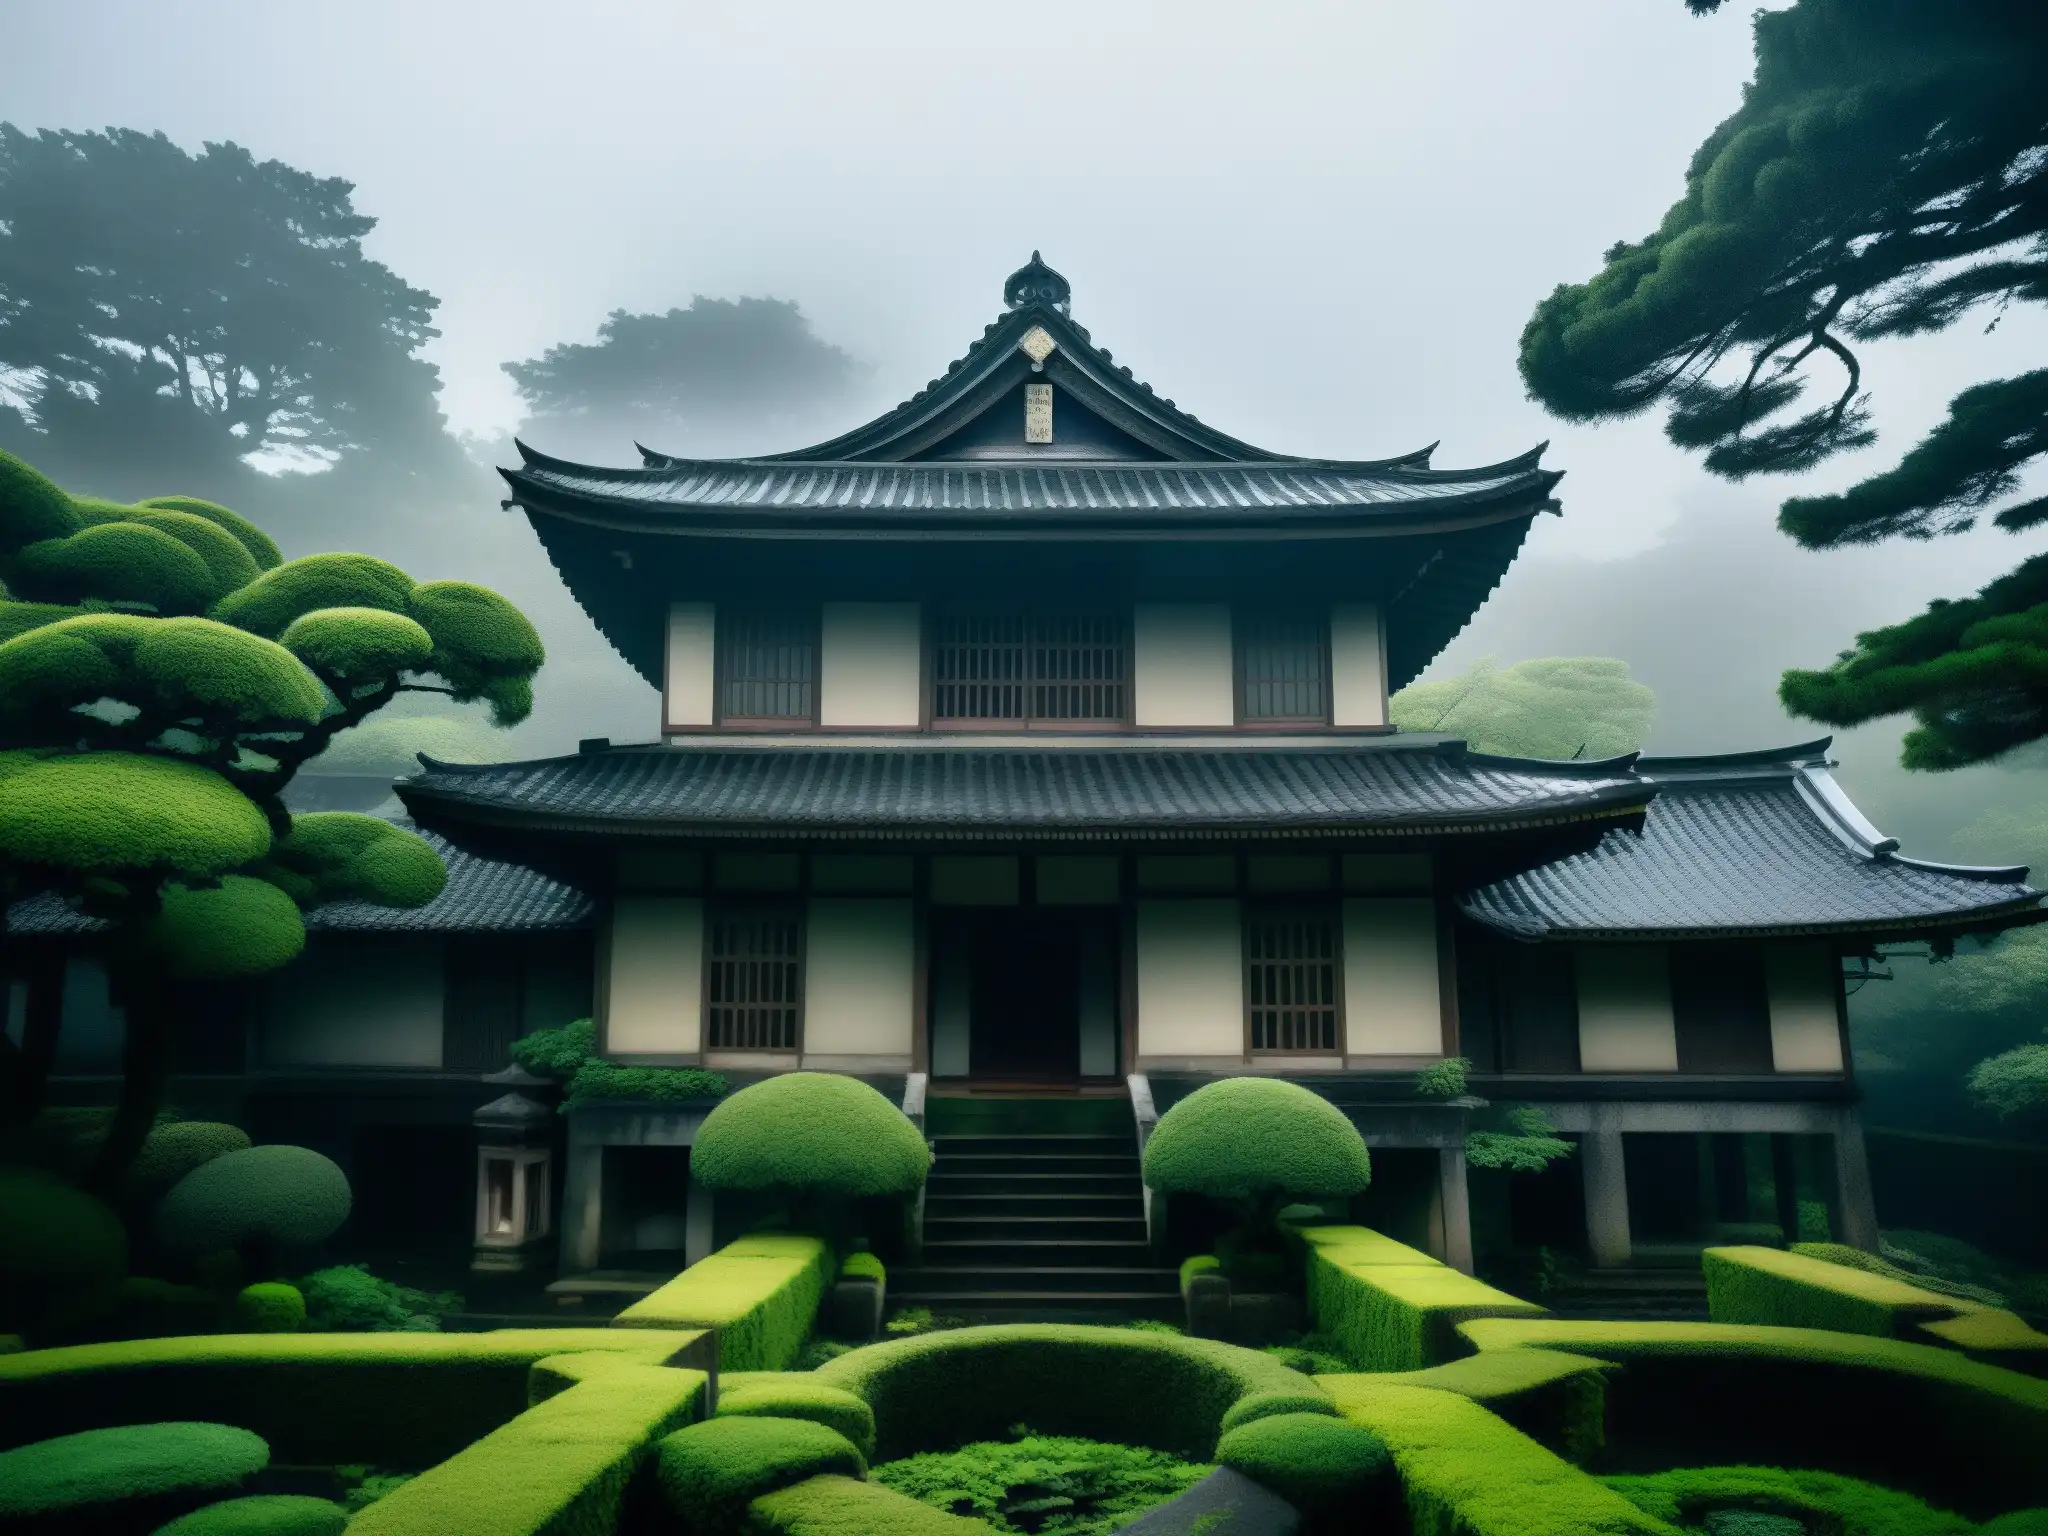 Mansión japonesa antigua y misteriosa, con jardines tenebrosos y un aura de maldición Okiku influencia cine terror